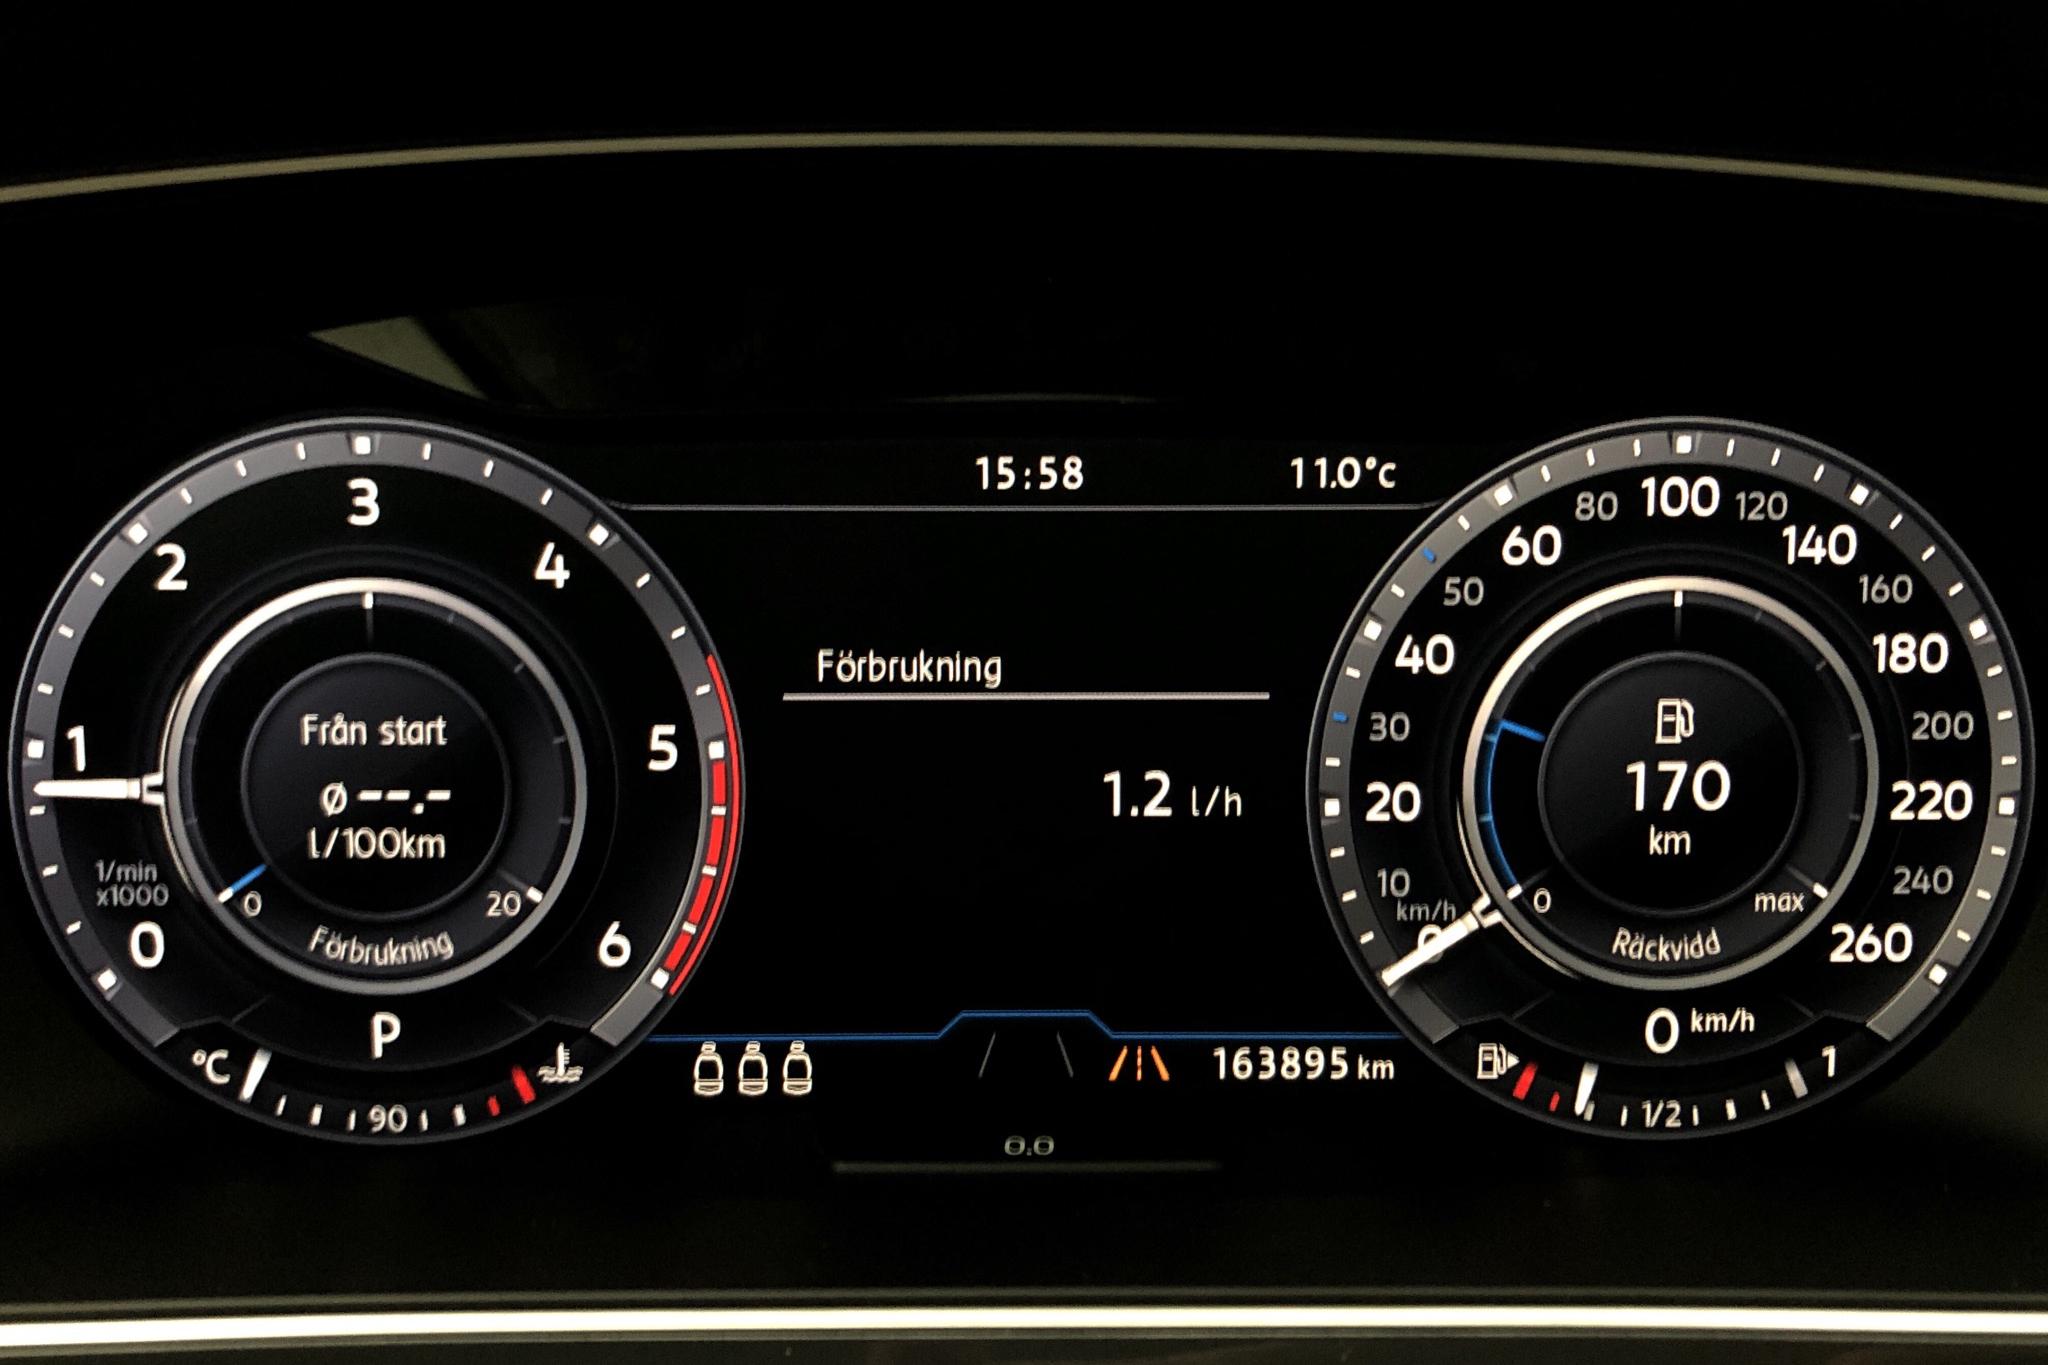 VW Tiguan 2.0 TDI 4MOTION (190hk) - 163 900 km - Automatic - white - 2017